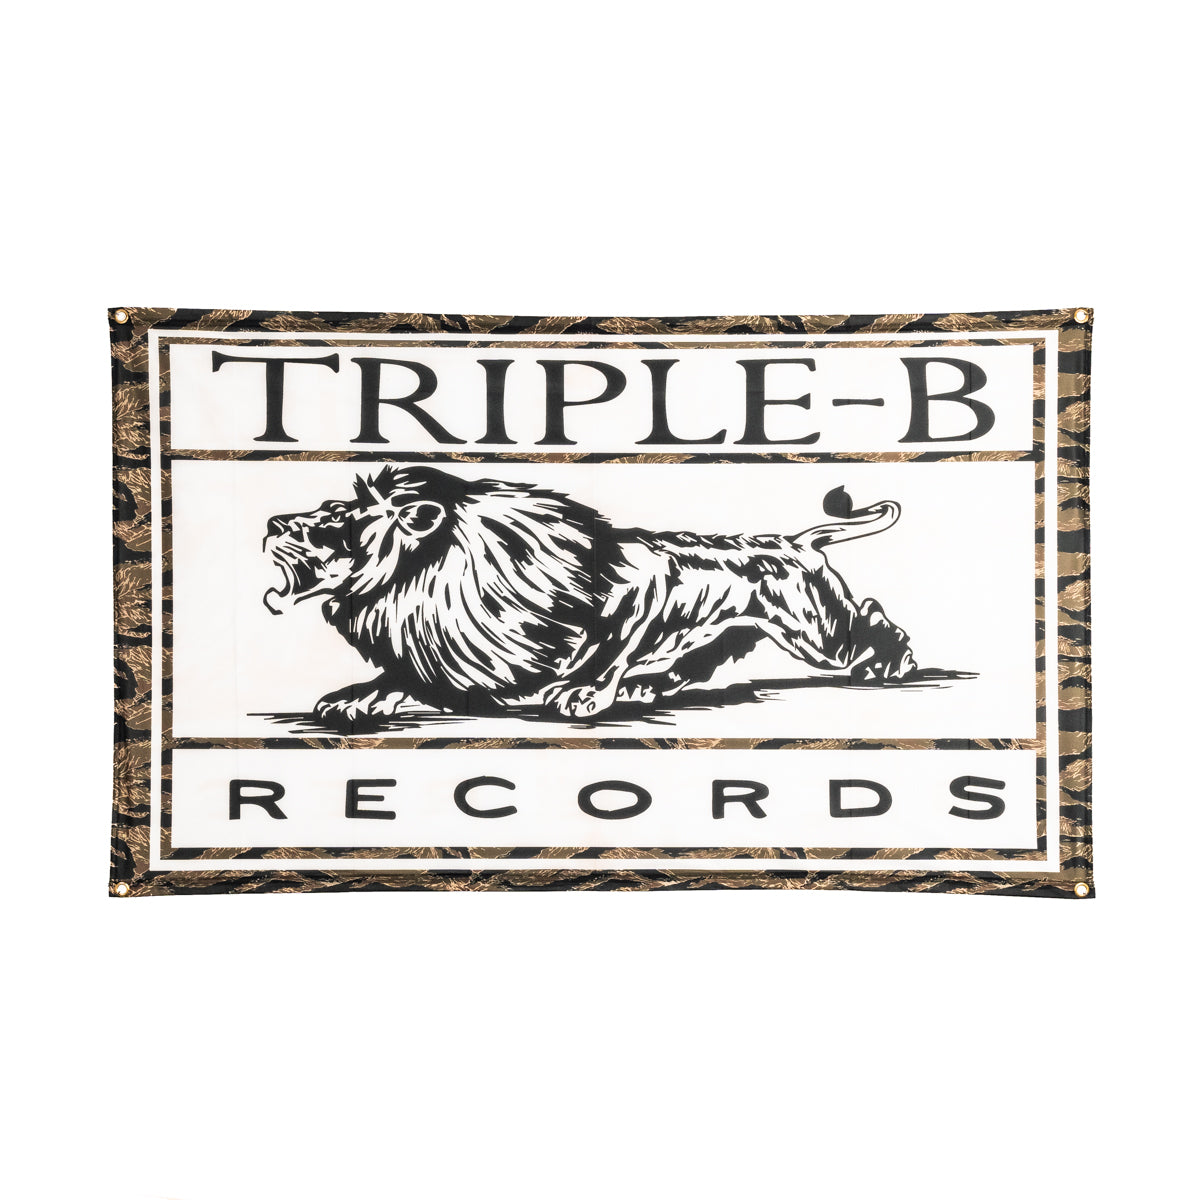 TRIPLE B RECORDS "Logo" Flag